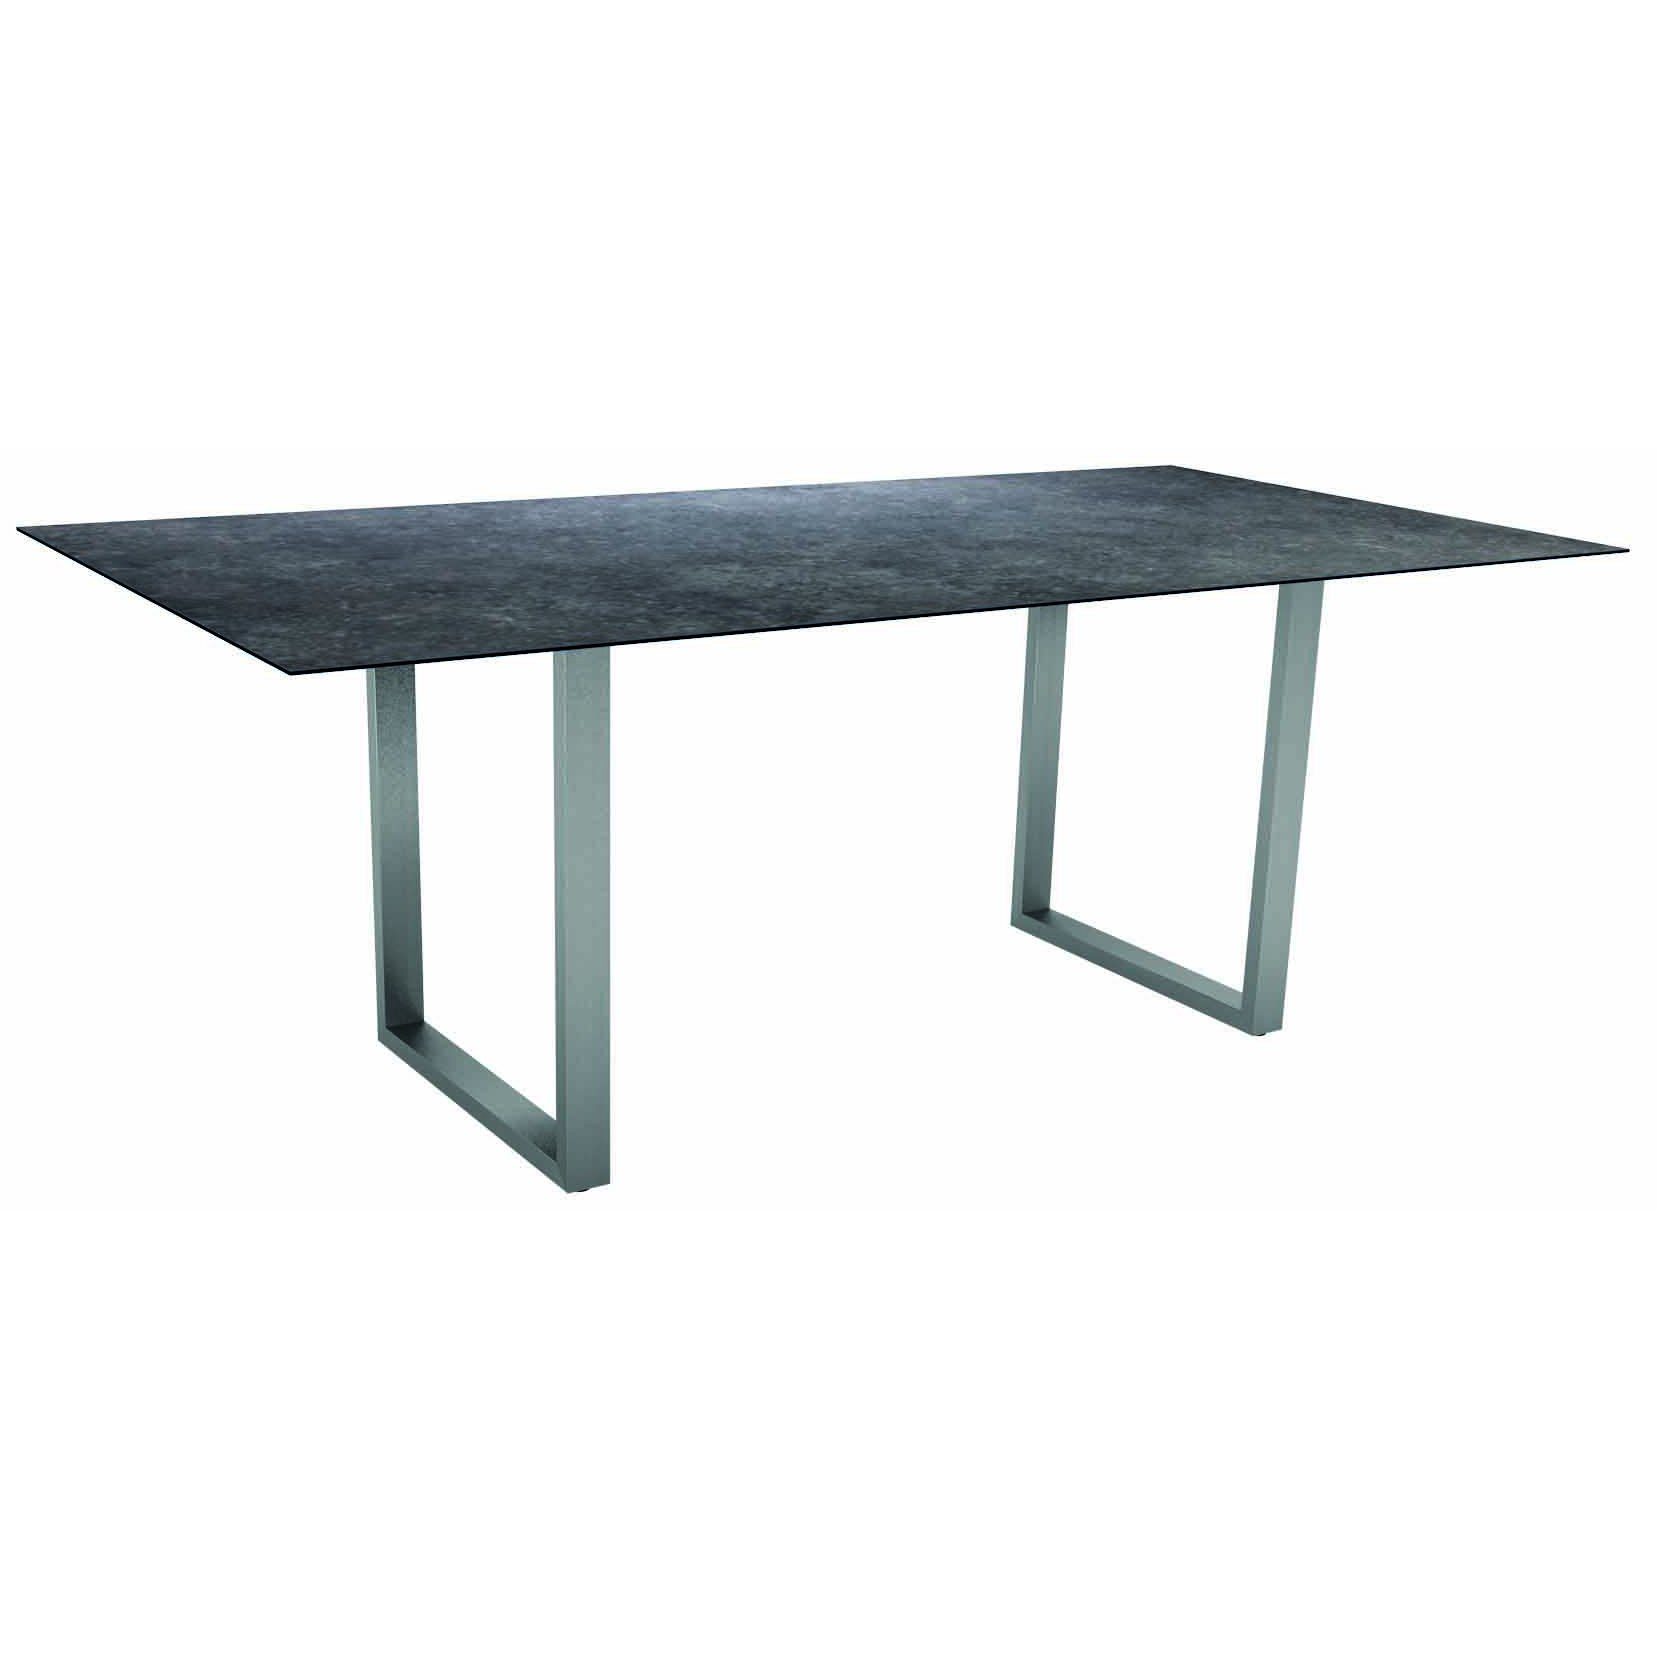 Stern Kufentisch, Gestell Edelstahl, Tischplatte HPL Vintage grau, Tischgröße: 200x100 cm